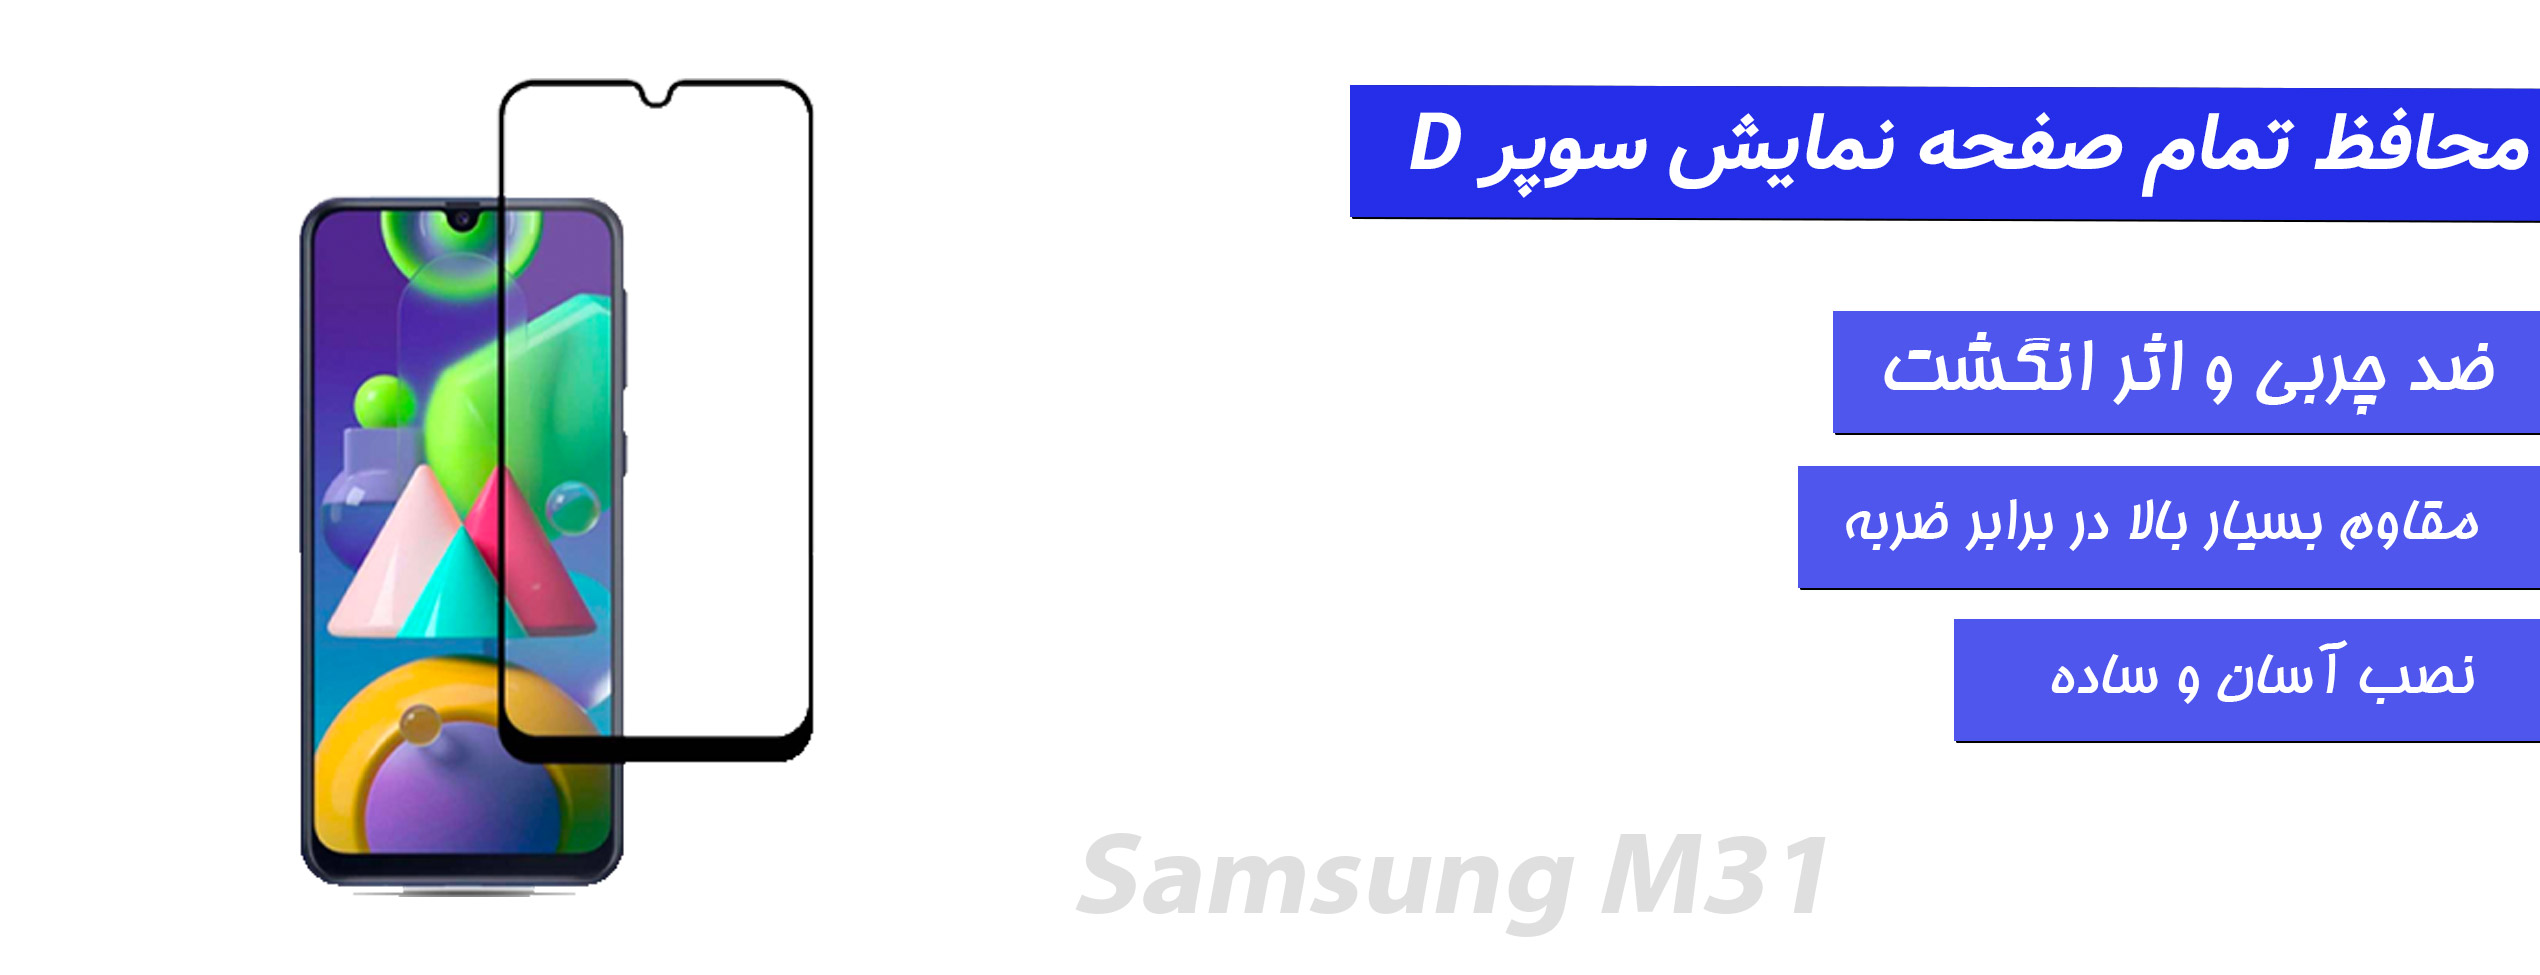 گلس Super D گوشی سامسونگ Samsung M31